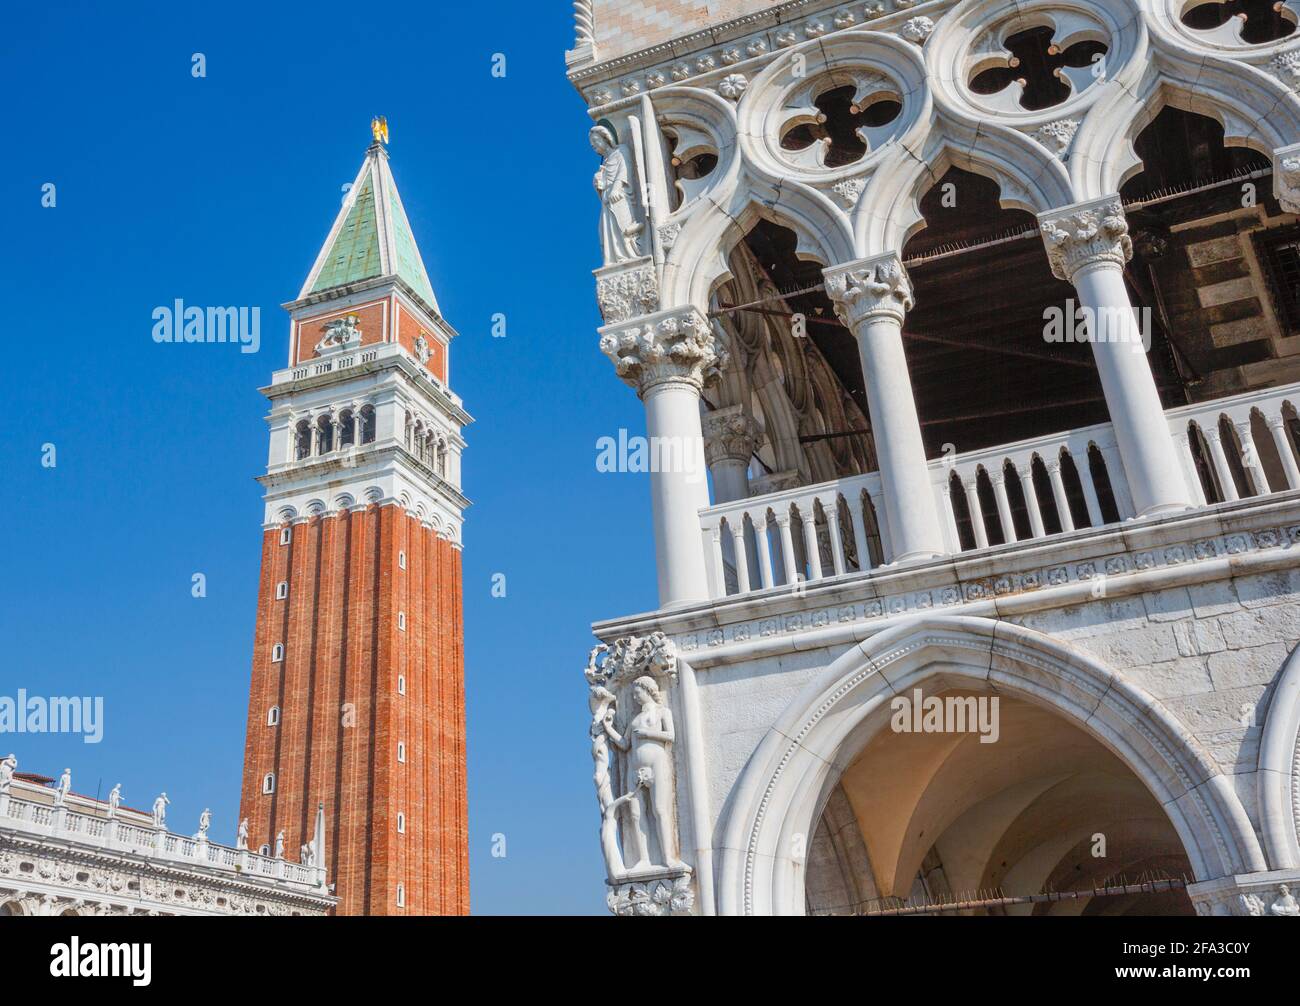 Venedig, Region Venetien, Italien. Der Campanile oder Glockenturm, links, und der Palazzo Ducale oder der Herzogspalast, rechts, von der Piazzetta aus gesehen, in der Nähe des Markusplatz Stockfoto